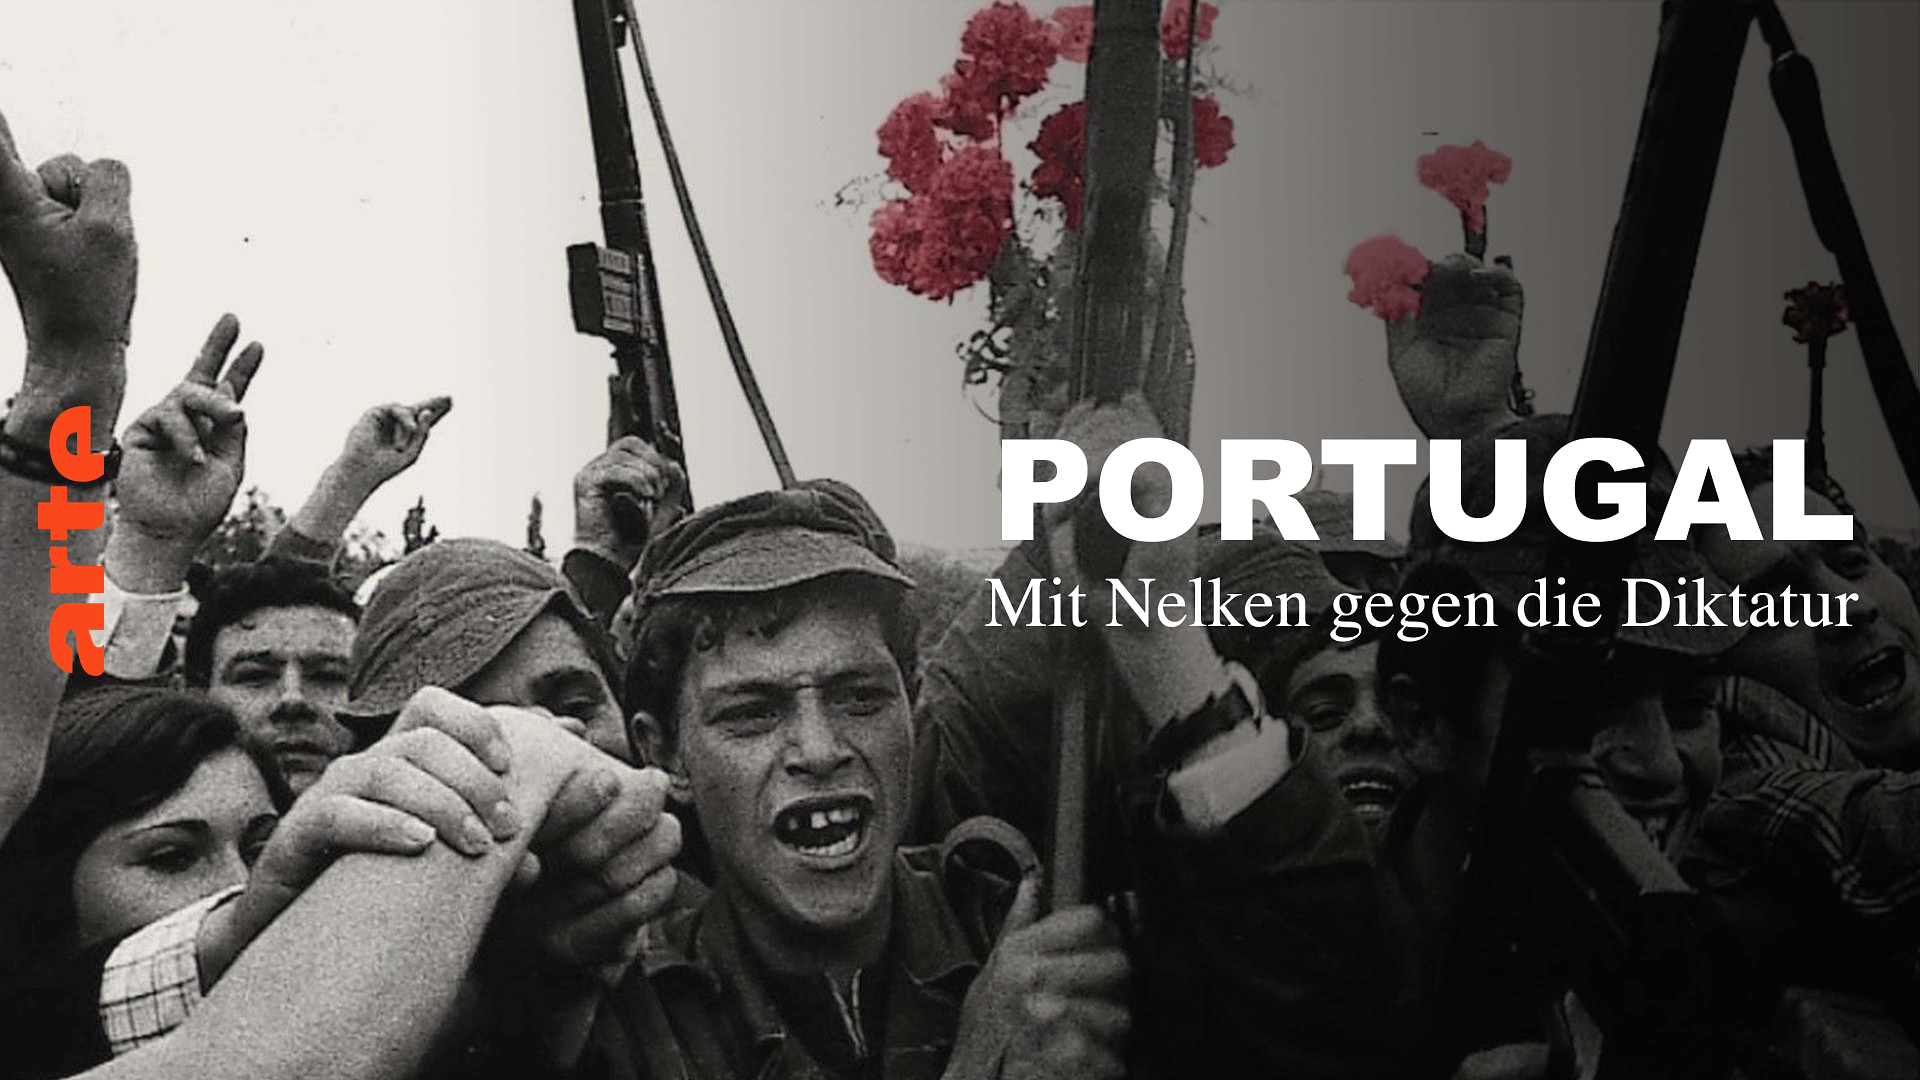 Portugal - Mit Nelken gegen die Diktatur